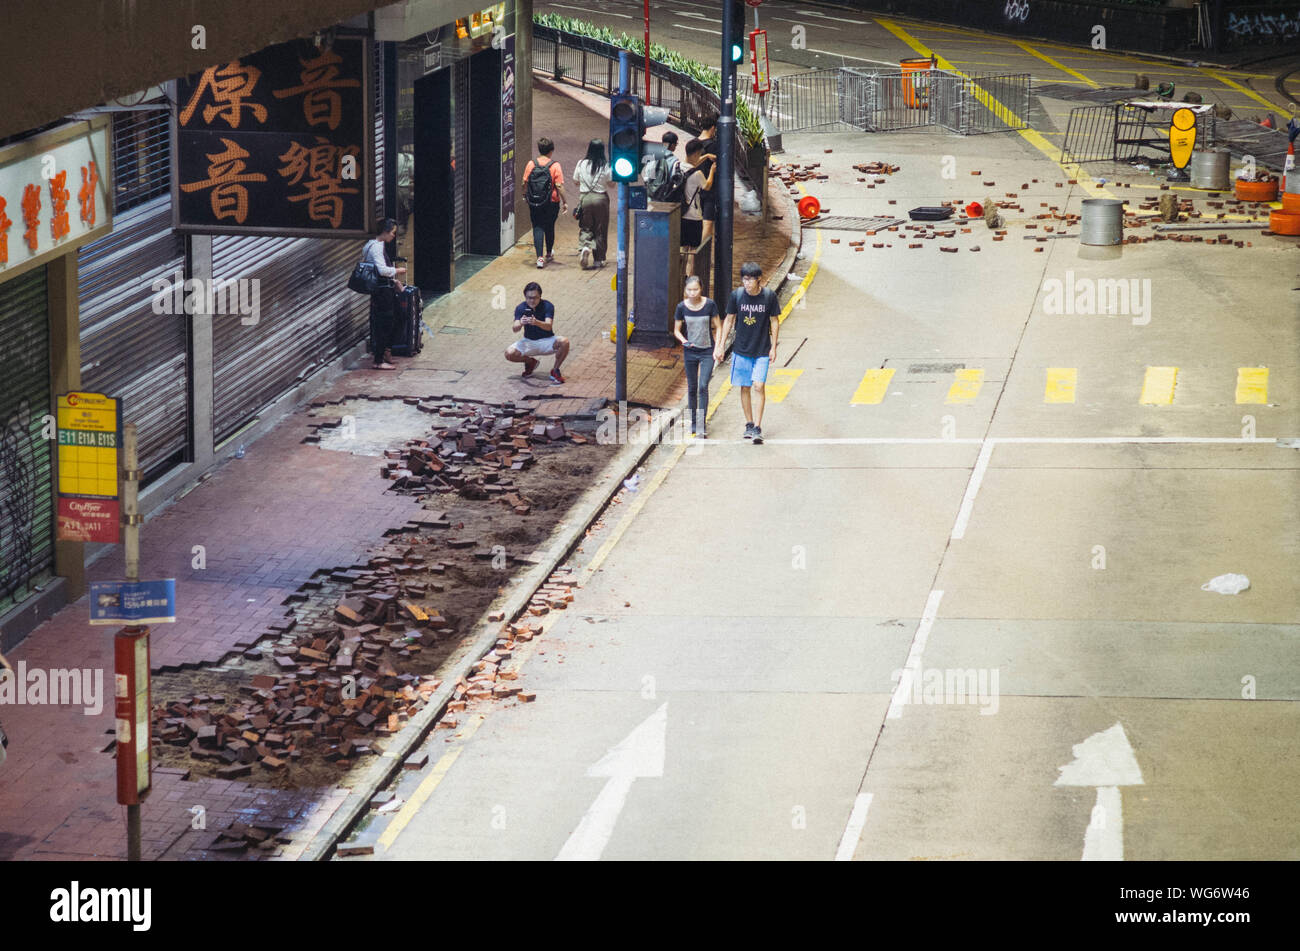 Hong Kong, 31 de agosto de 2019 - Después de la protesta de Hong Kong, los ladrillos se extraen como arma para atacar a la policía. Foto de stock